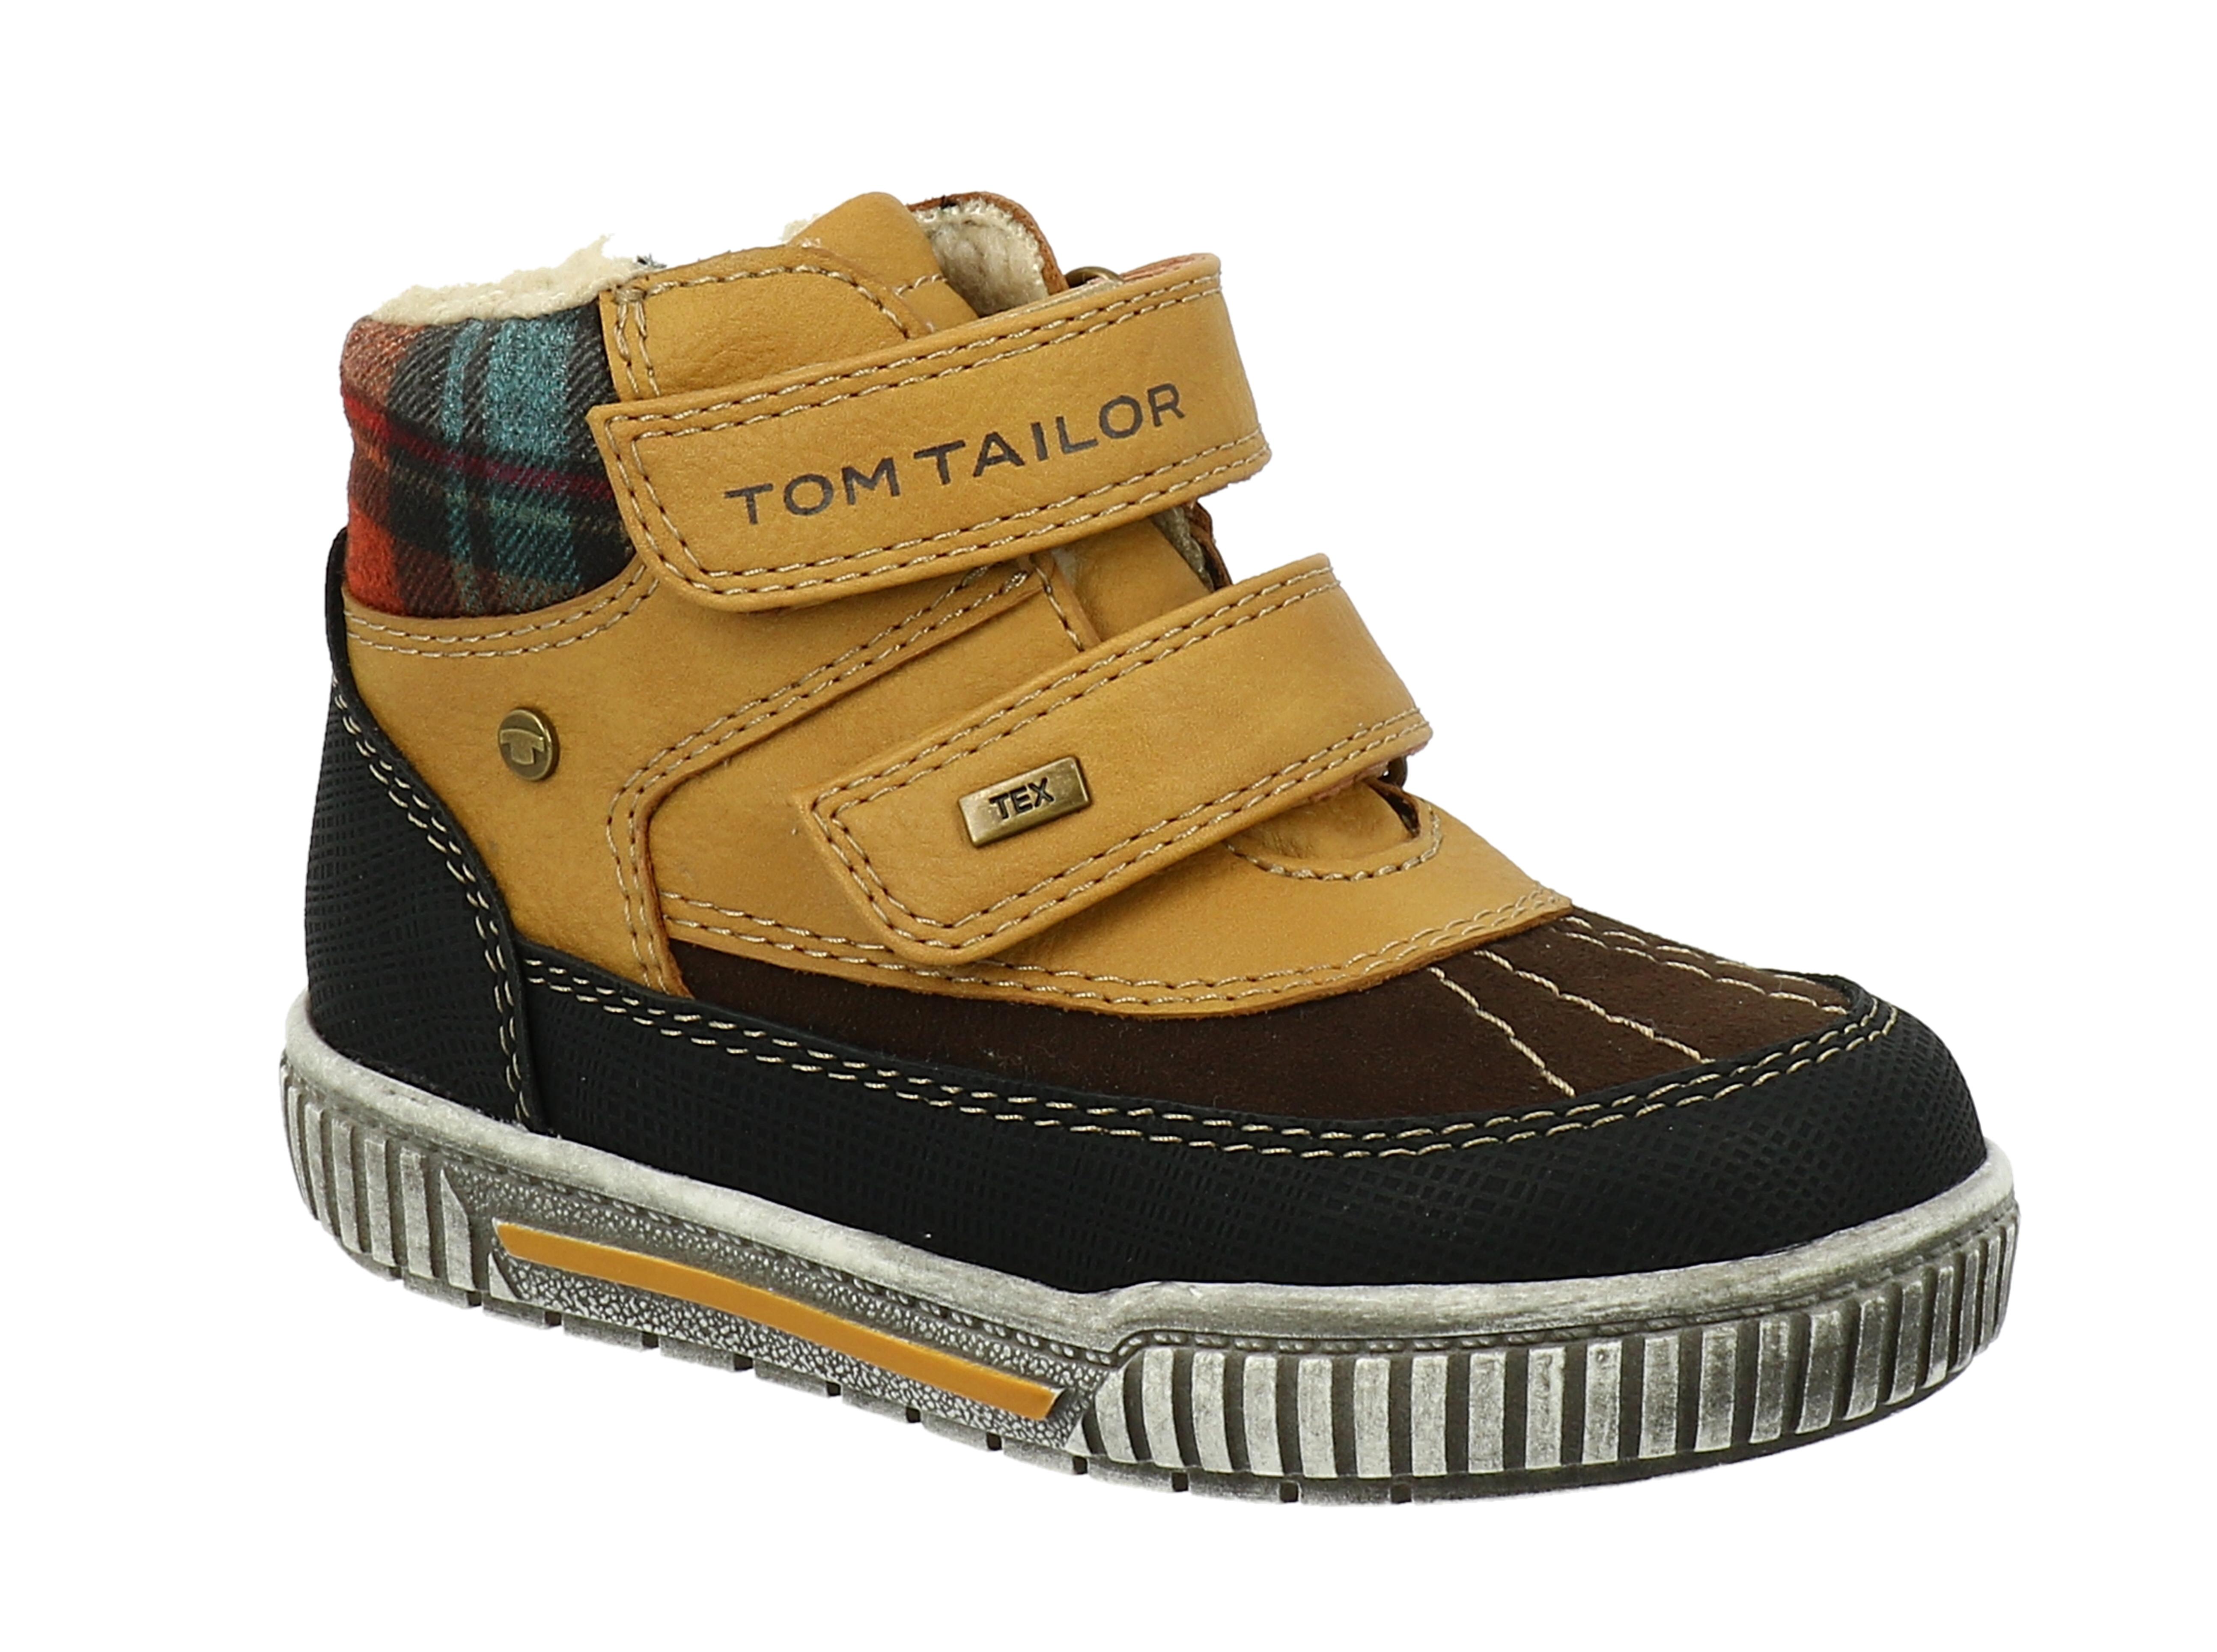 Tom Tailor zimní obuv s TEX mebránou camel/black Velikost: 31